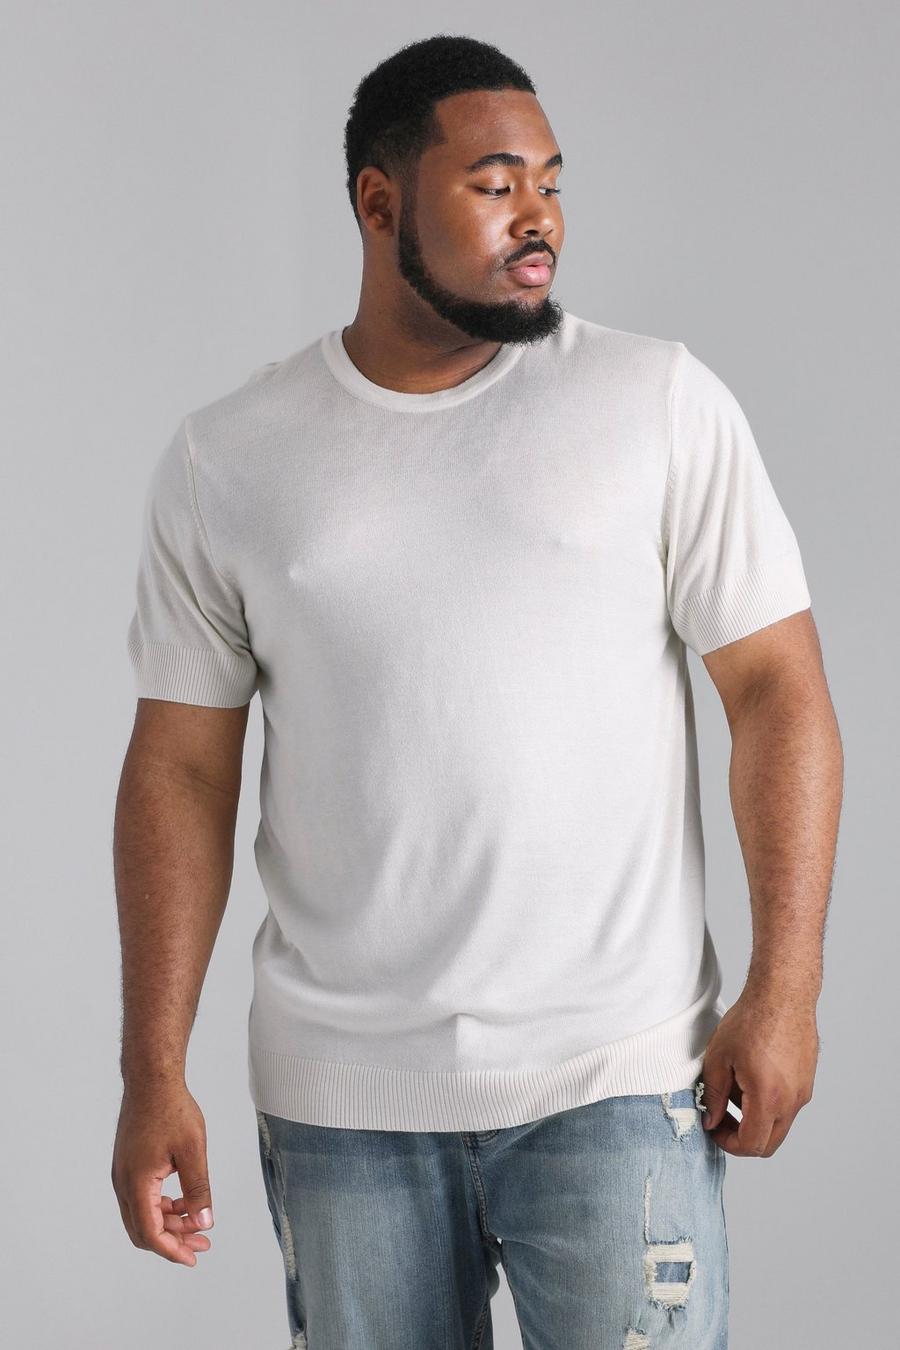 T-shirt Plus Size Basic in maglia riciclata, Cream blanco